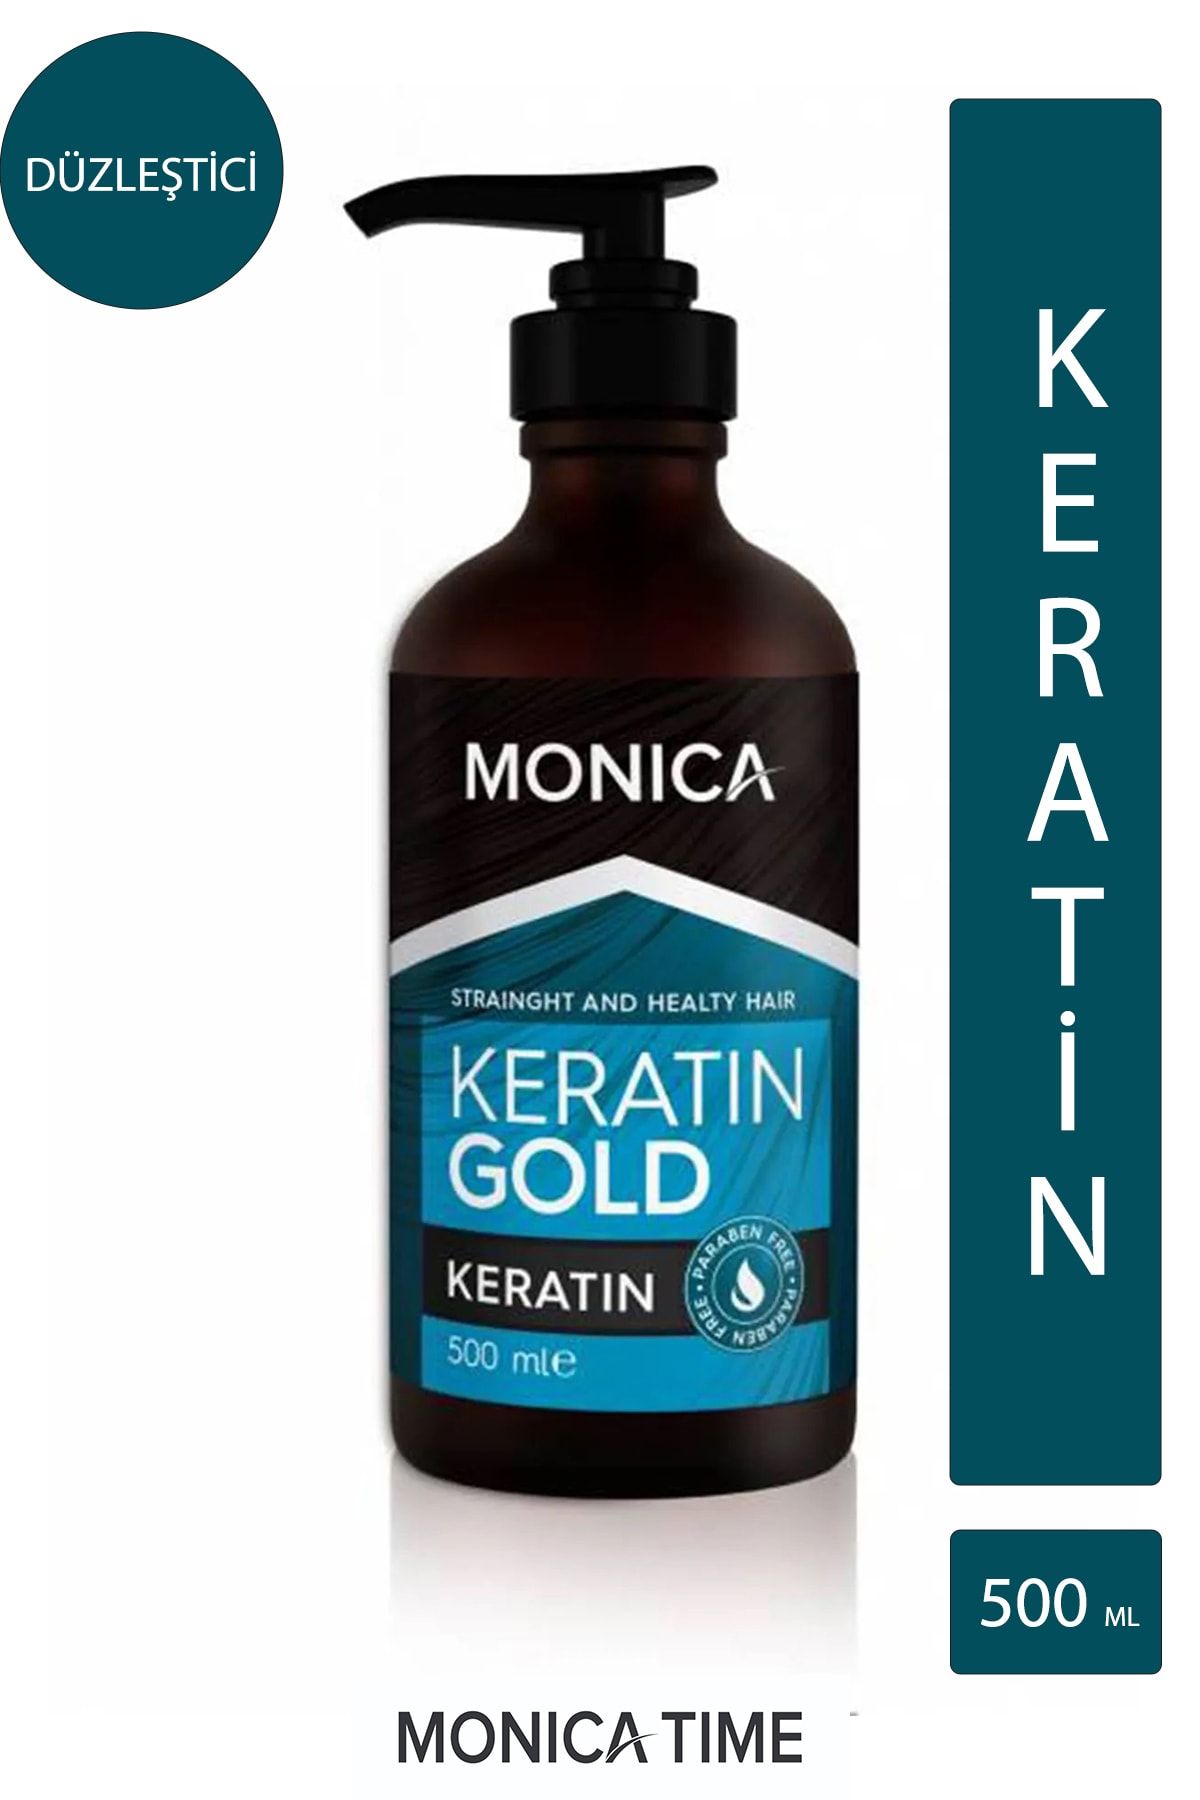 Monica Keratin Gold Monicatime Keratin Gold - Keratin Saç Düzleştirici 500 ml